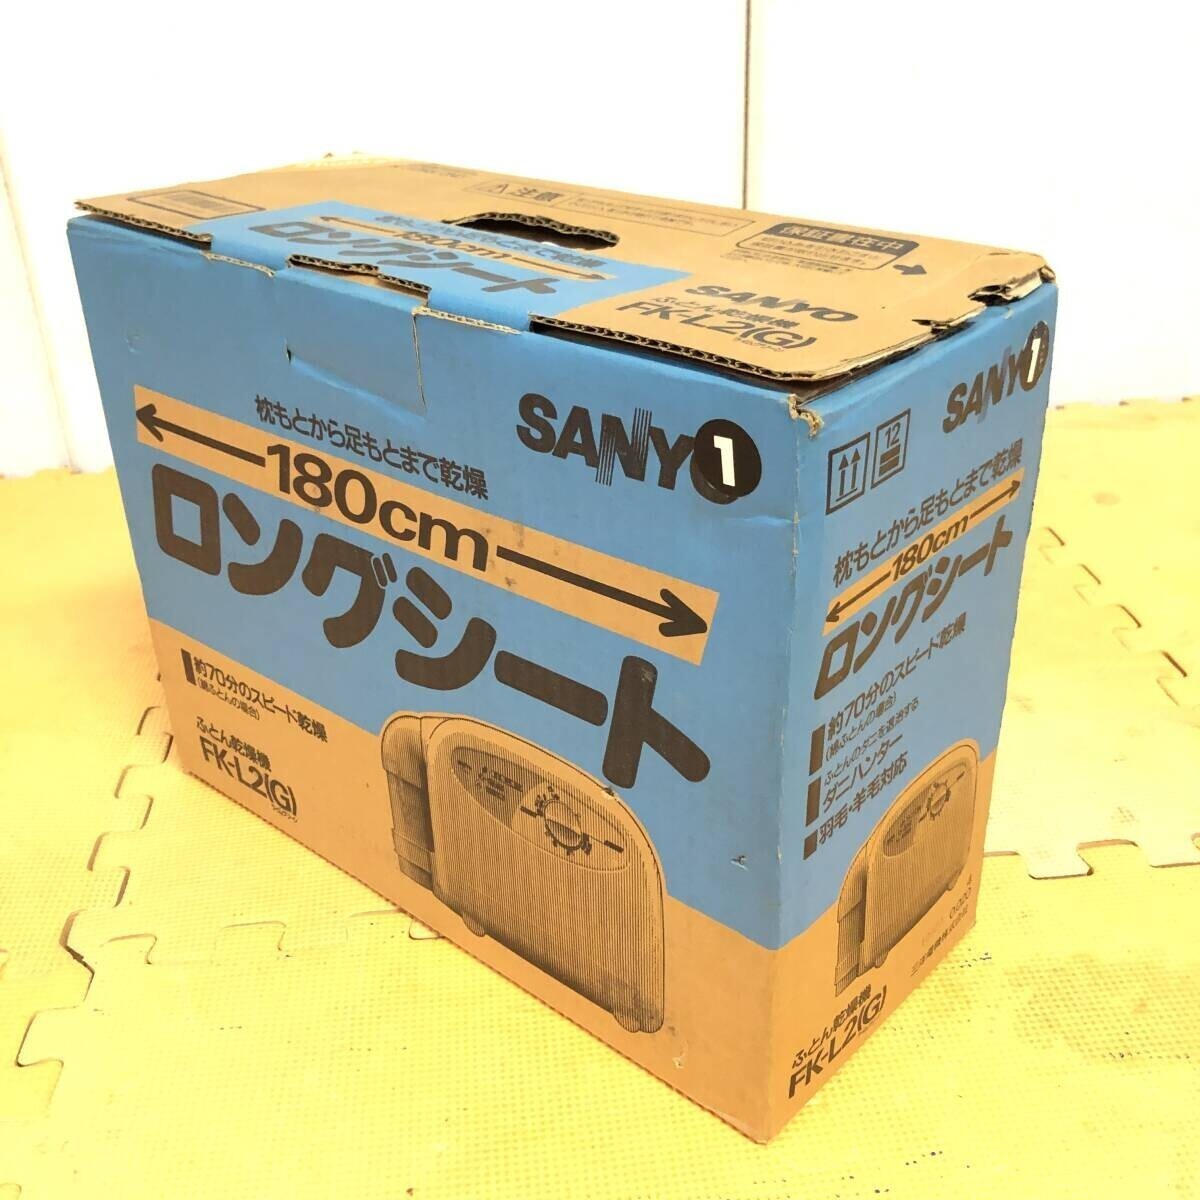 *SANYO Sanyo Electric futon сушильная машина FK-L2 99 год производства сушильная машина 180cm длинный сиденье futon различные промтовары бытовая техника часть рабочее состояние подтверждено б/у товар *R00379